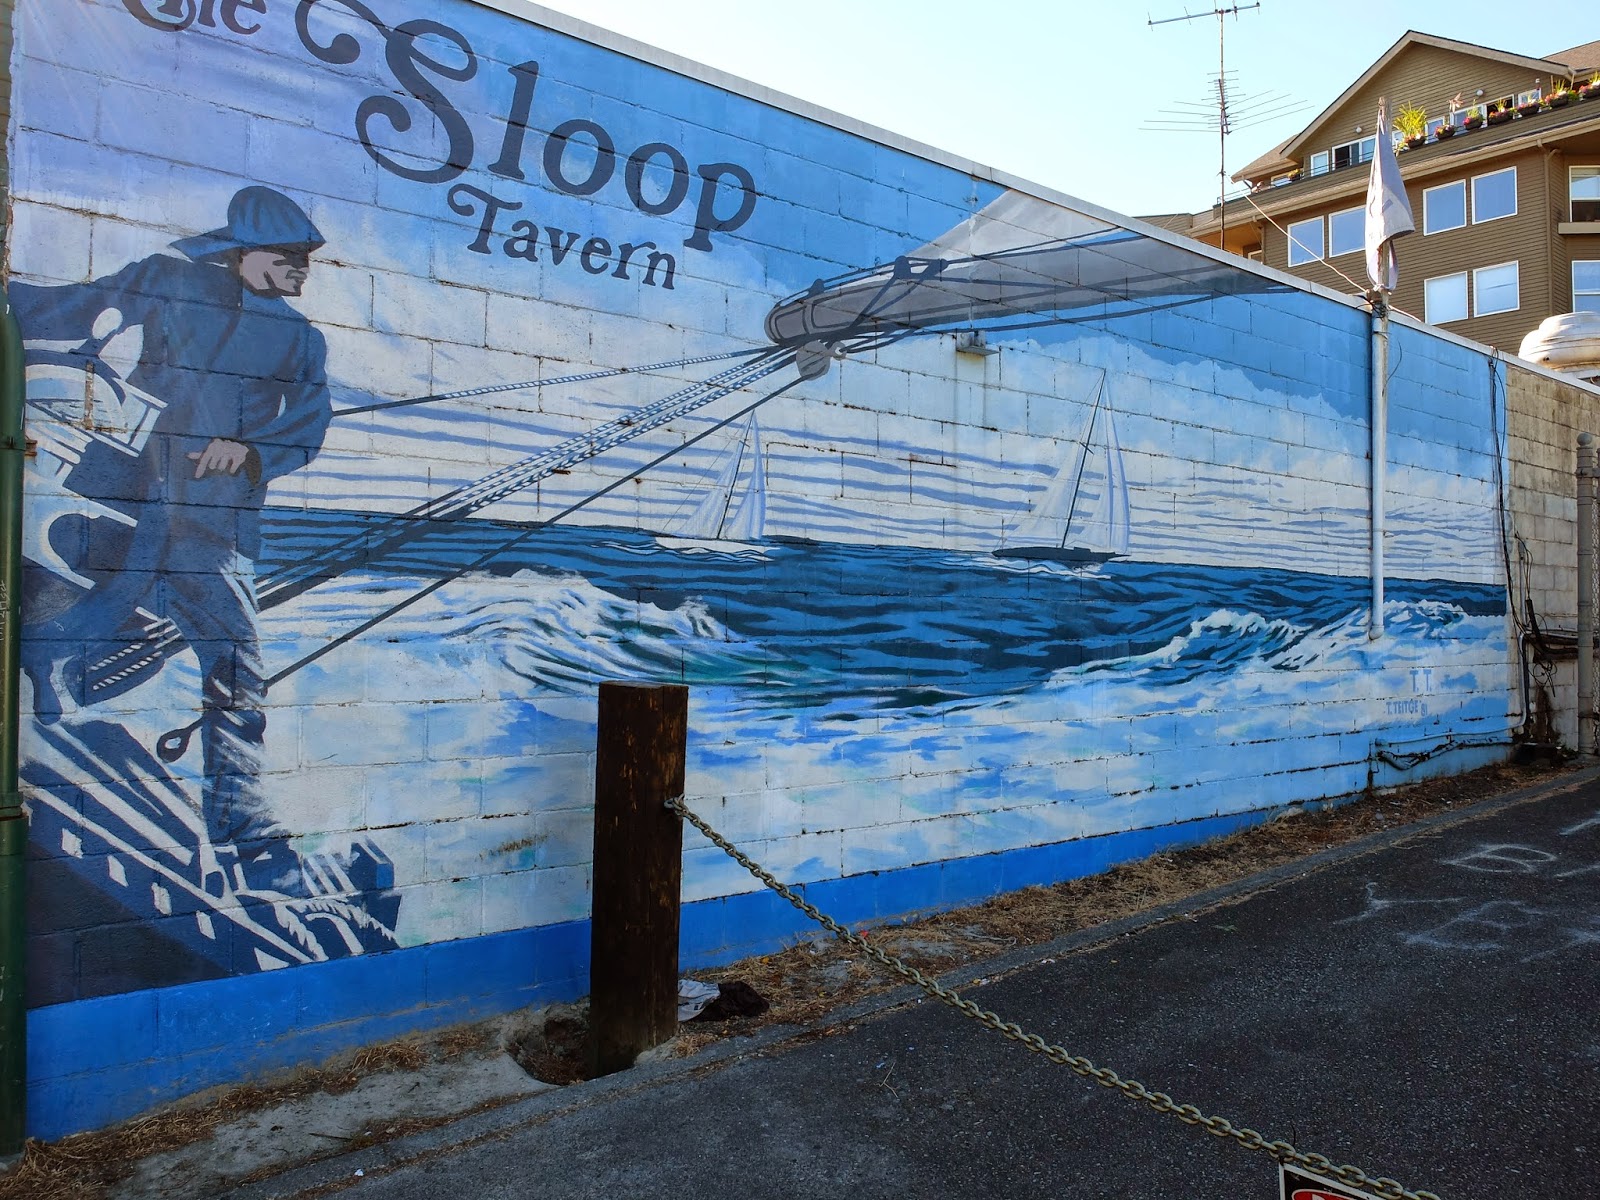 TravelMarx: The Sloop Tavern Mural